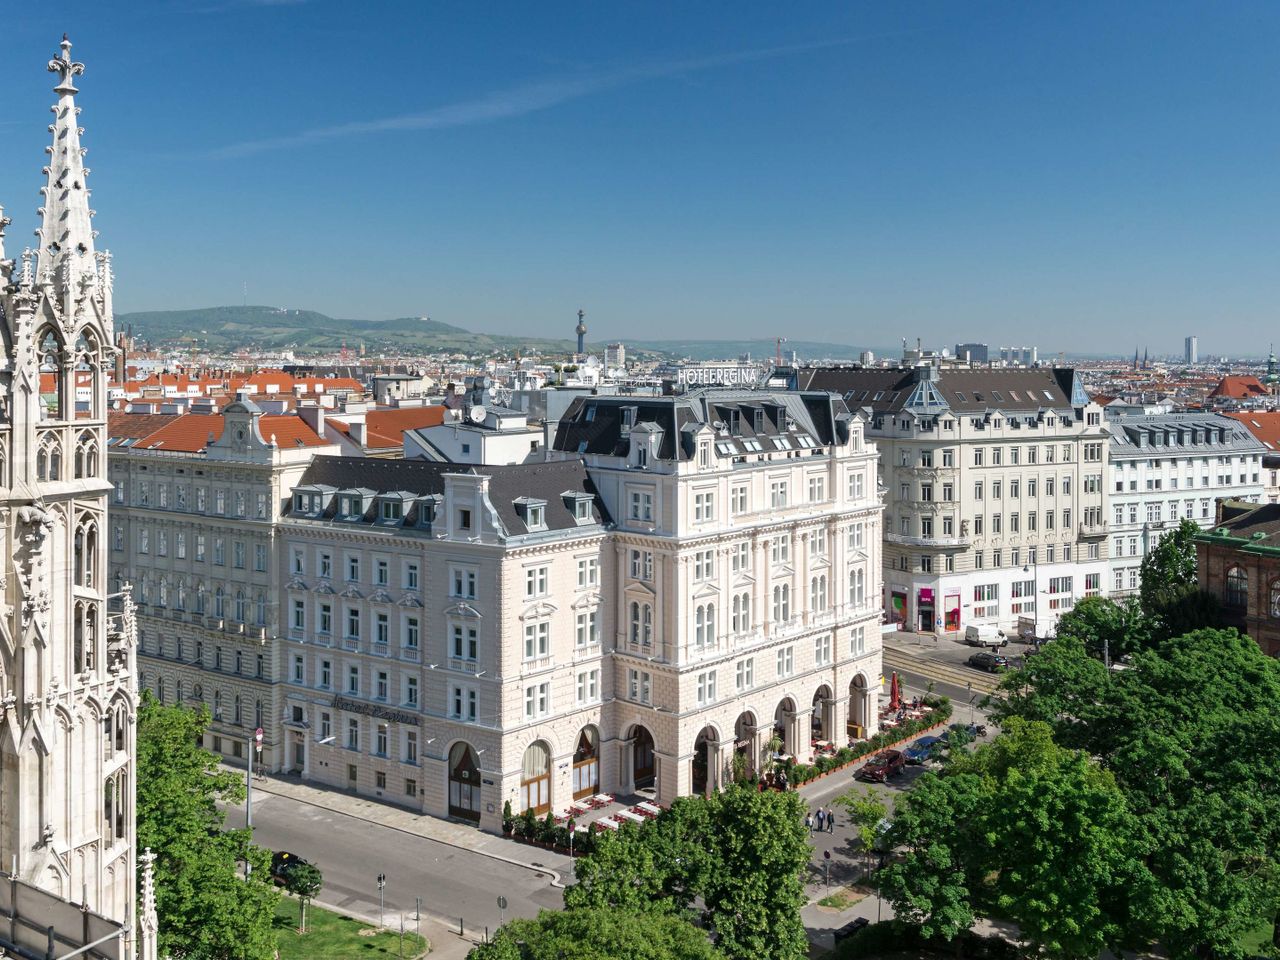 Das wunderschöne Wien erleben - 5 Tage